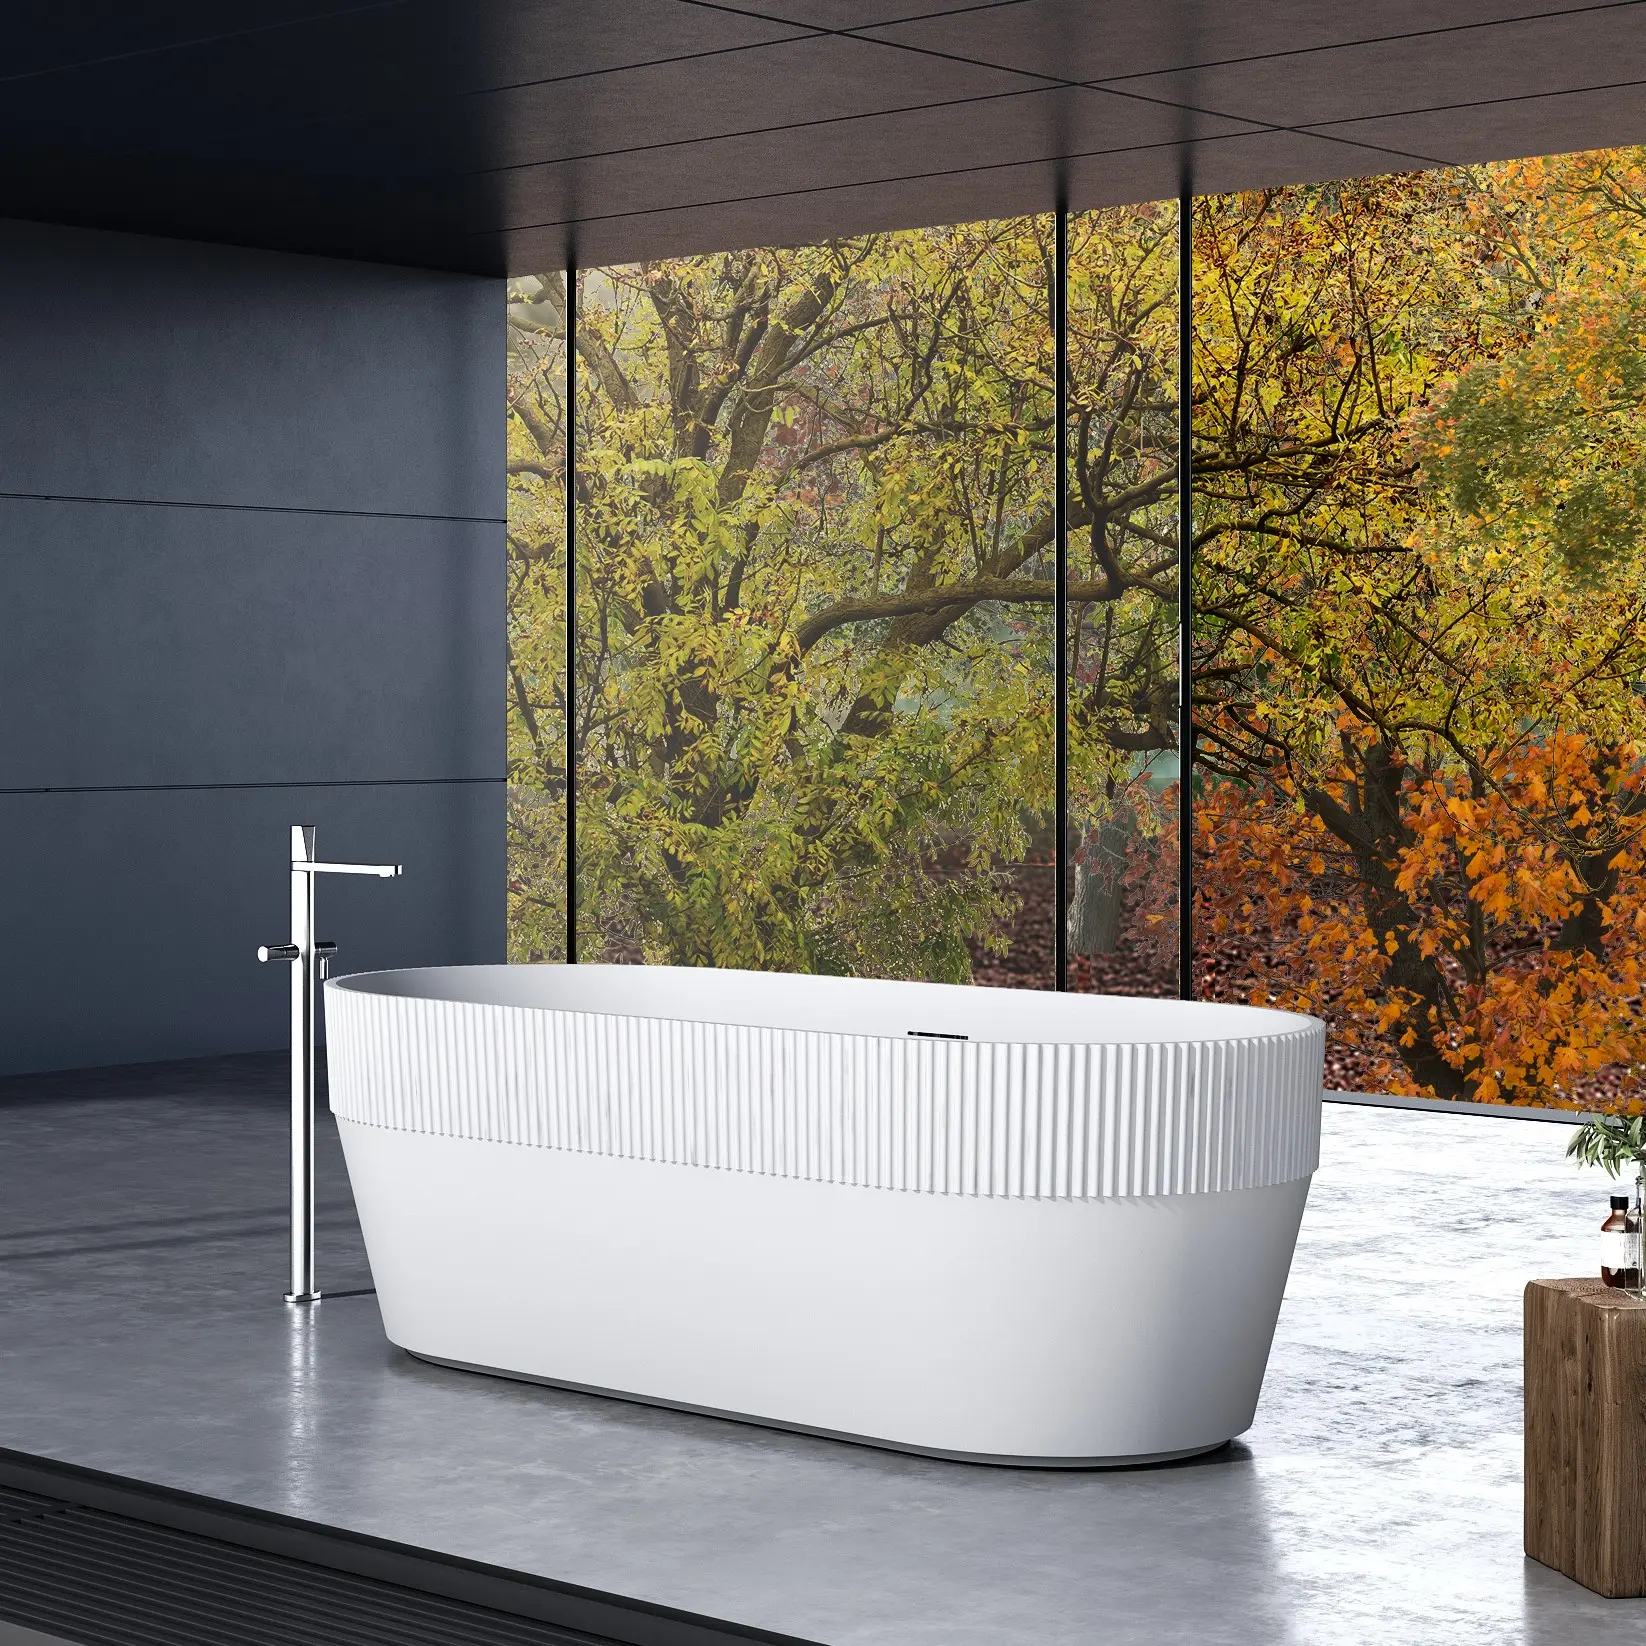 Baignoire autoportante en acrylique blanc, toilette de Surface solide, pour salle de bains, BTW7101 SGCC, a1